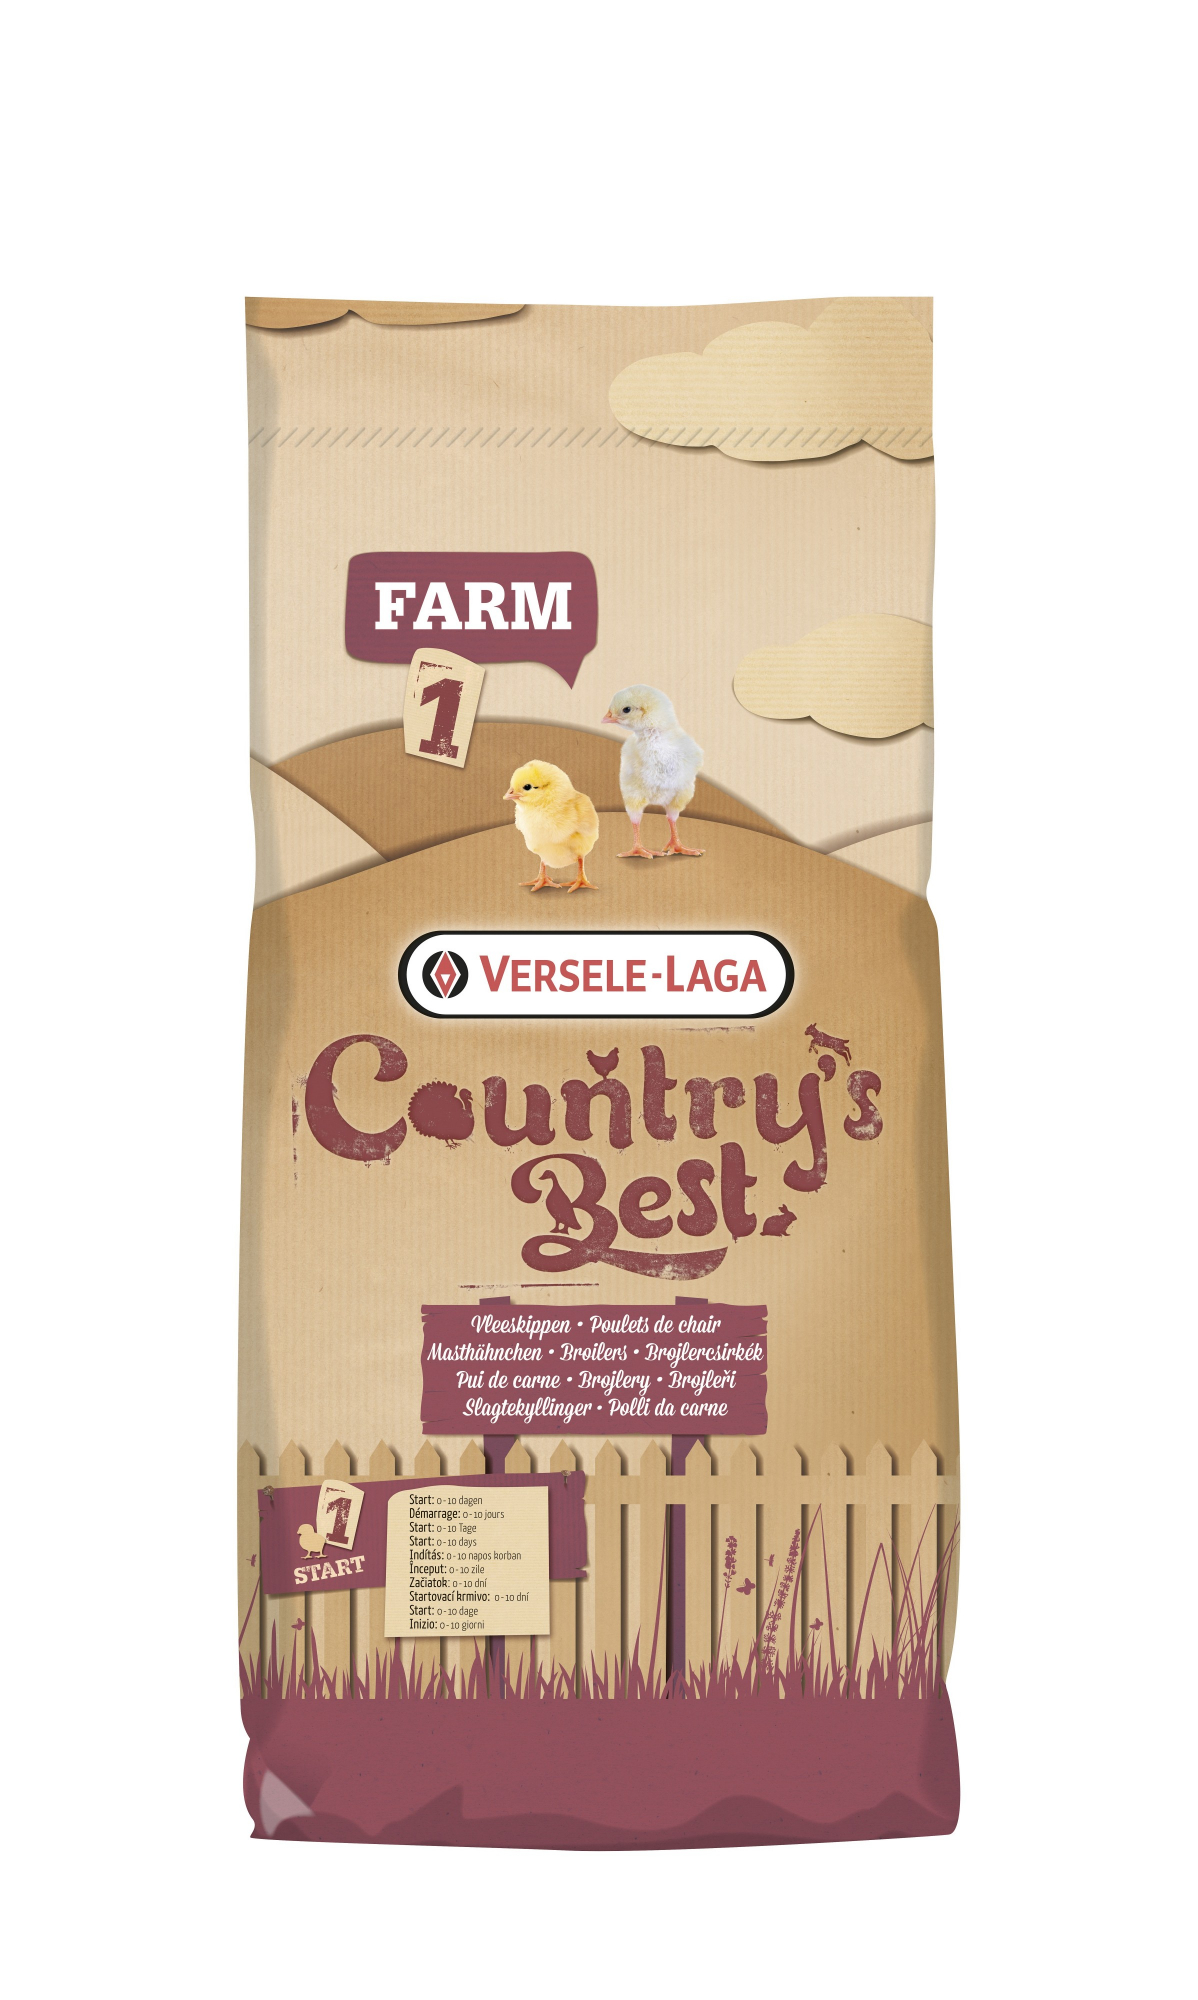 Farm 1 Mash Country's Best Farine iniziale per i primi 10 giorni